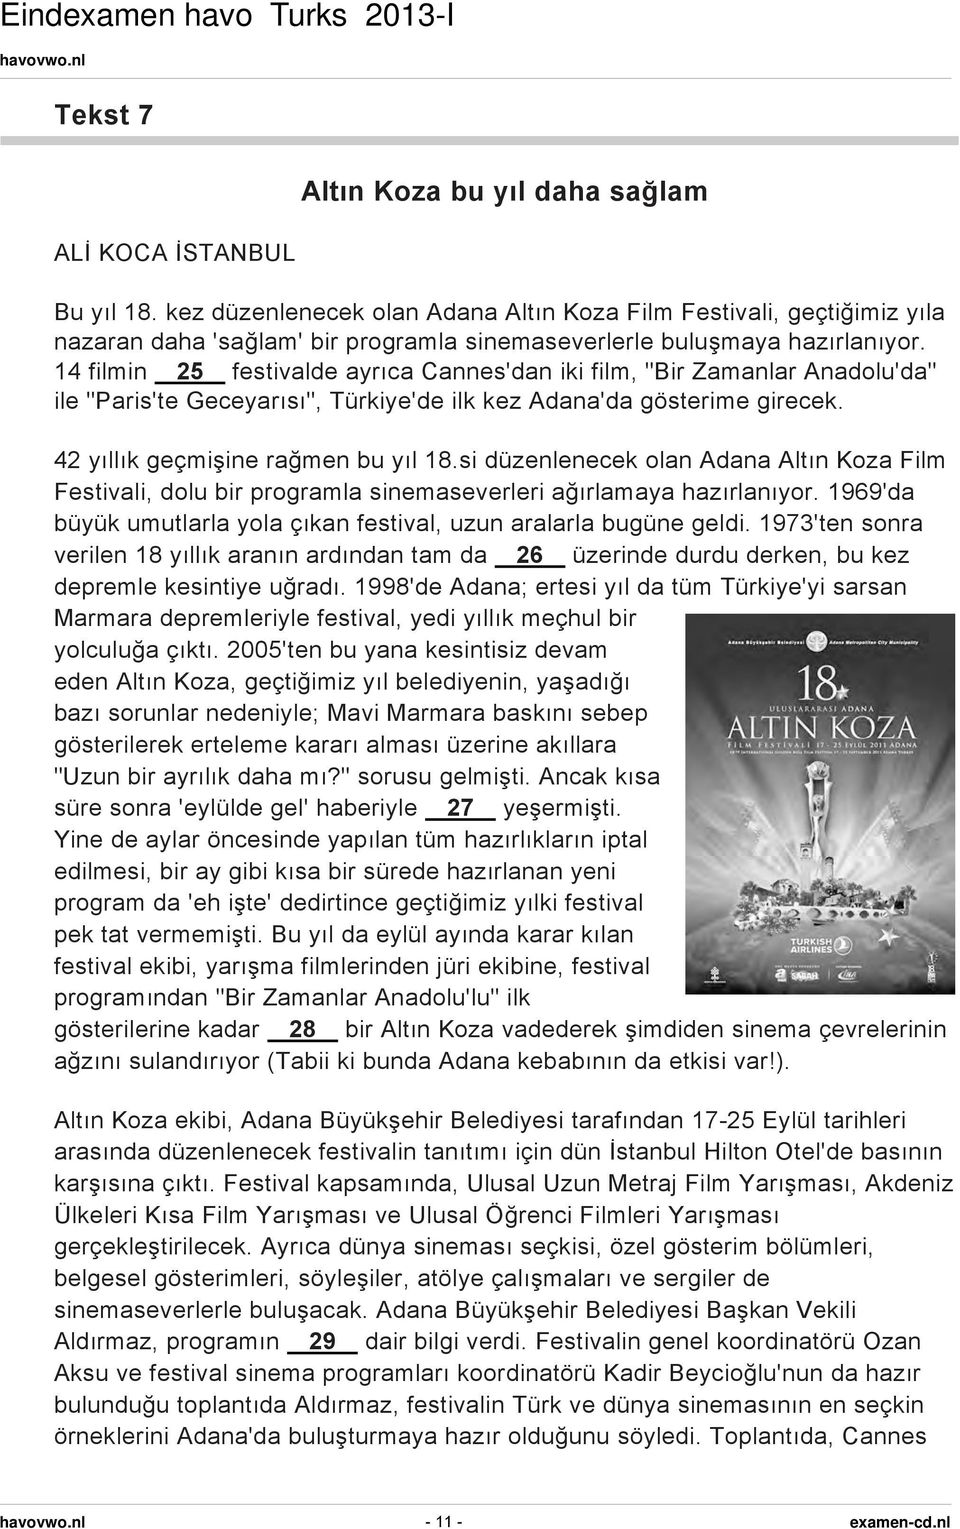 14 filmin 25 festivalde ayrıca Cannes'dan iki film, "Bir Zamanlar Anadolu'da" ile "Paris'te Geceyarısı", Türkiye'de ilk kez Adana'da gösterime girecek. 42 yıllık geçmişine rağmen bu yıl 18.